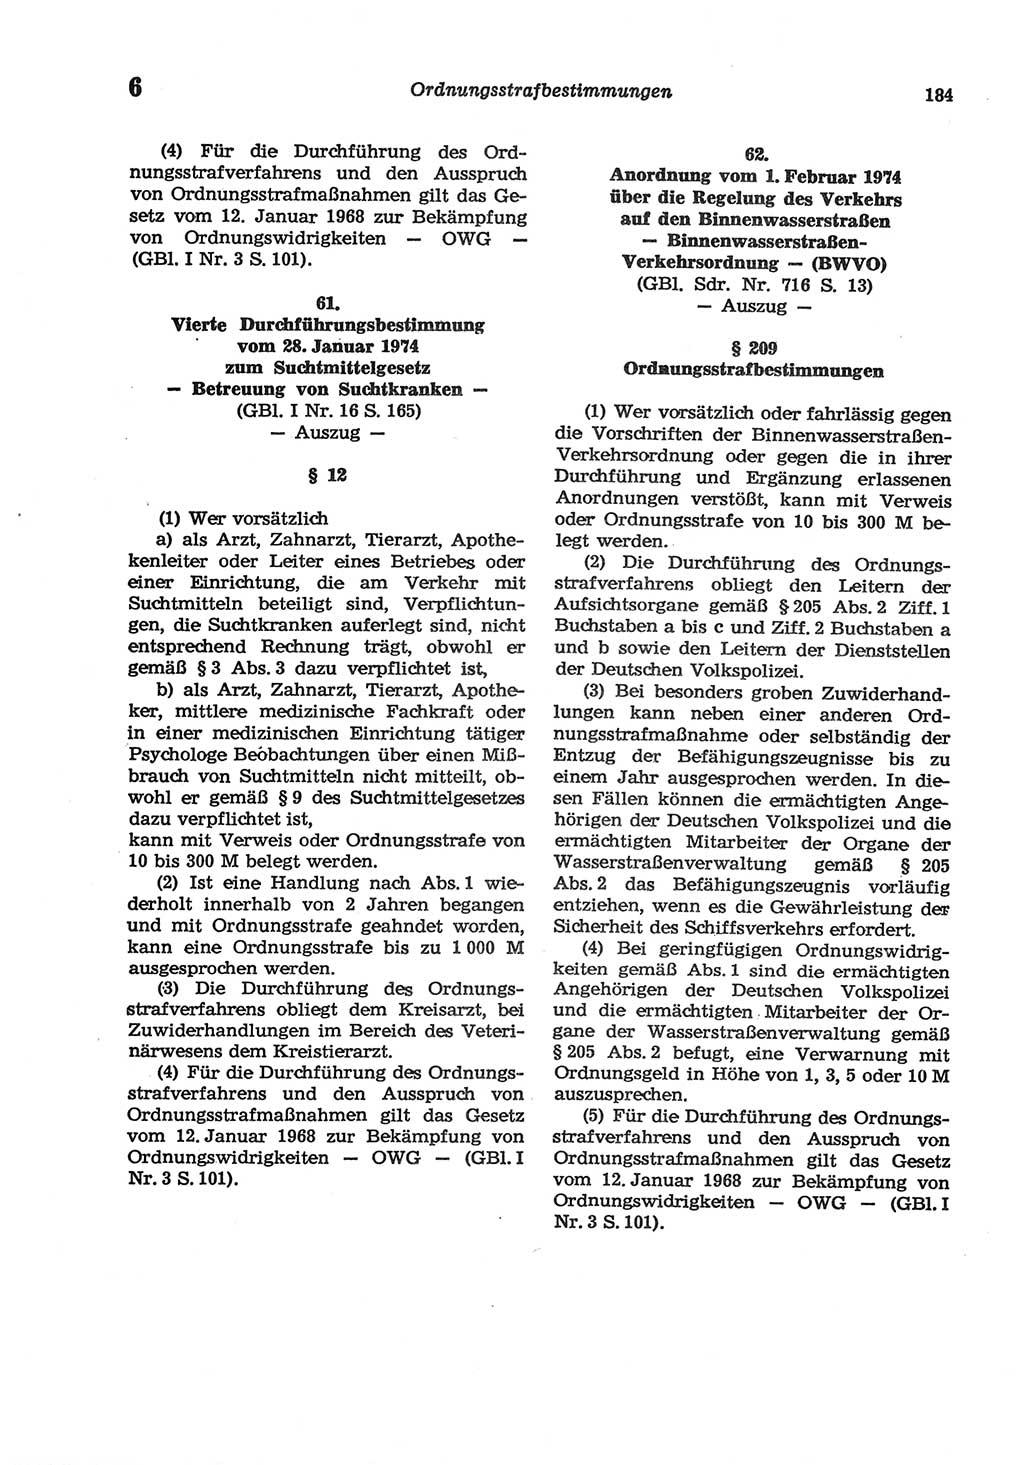 Strafgesetzbuch (StGB) der Deutschen Demokratischen Republik (DDR) und angrenzende Gesetze und Bestimmungen 1977, Seite 184 (StGB DDR Ges. Best. 1977, S. 184)